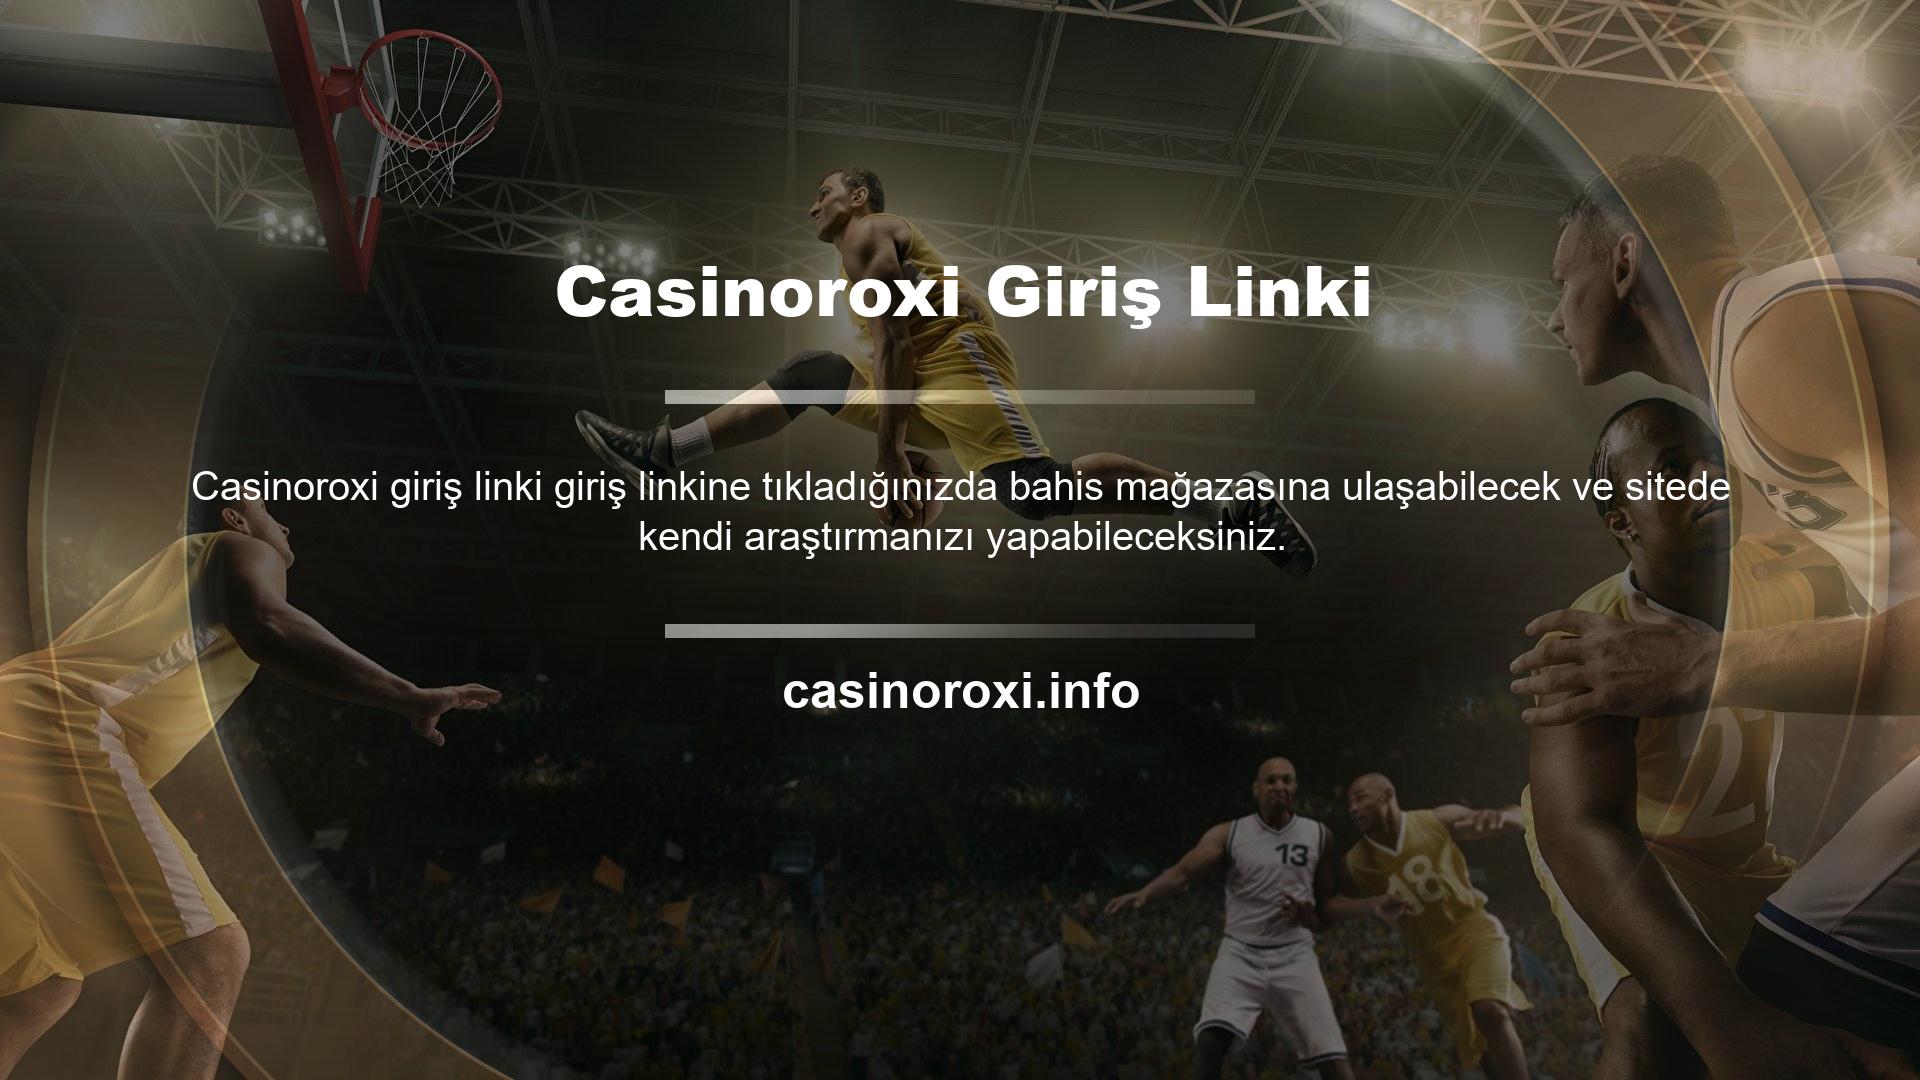 Casinoroxi gibi yasa dışı spor bahis siteleri, Casinoroxi spor bahis sitelerinde verilen tutarlardan ve bahis detaylarından memnun olmayan izleyiciler tarafından kullanılacaktır